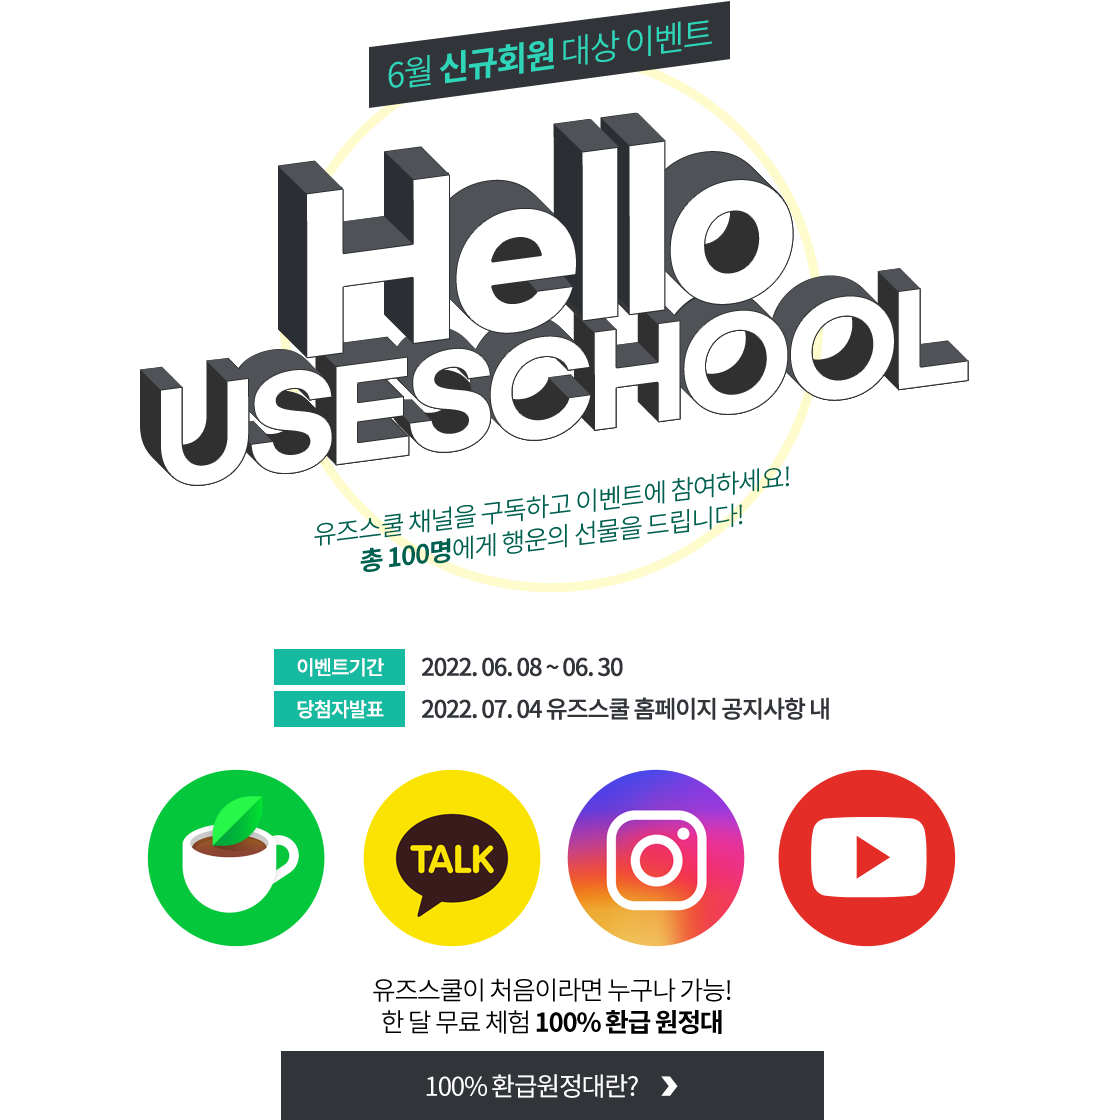 6월 신규회원 대상 이벤트 Heool USESCHOOL 유즈스쿨 채널을 구독하고 이벤트에 참여하세요! 총 100명에게 행운의 선물을 드립니다!